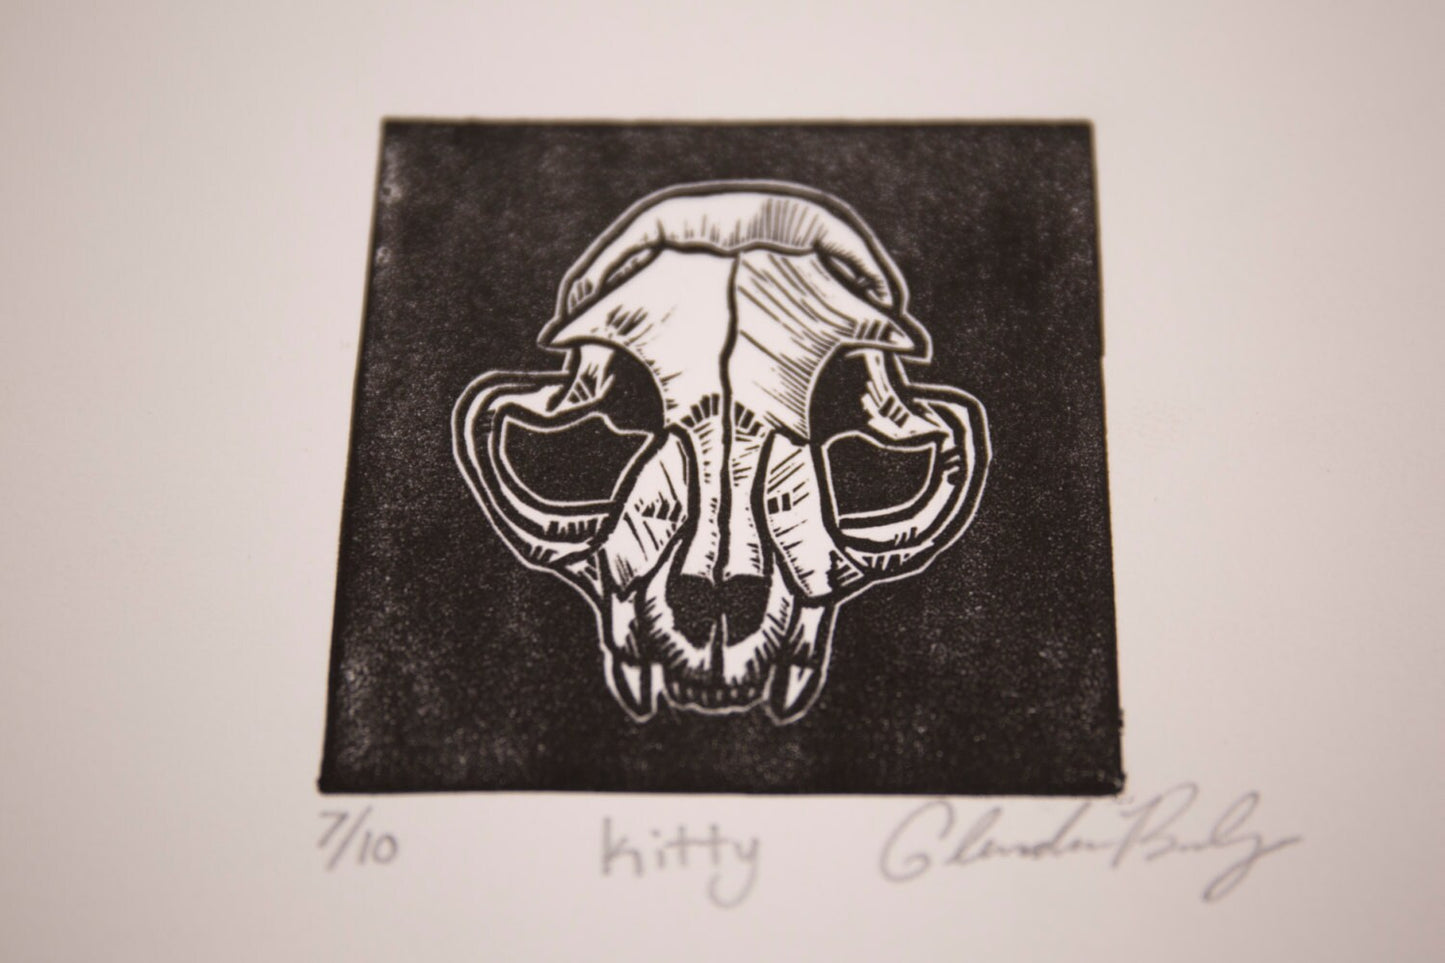 Kitty | Cat Skull | Lino Cut Print | Bone Art